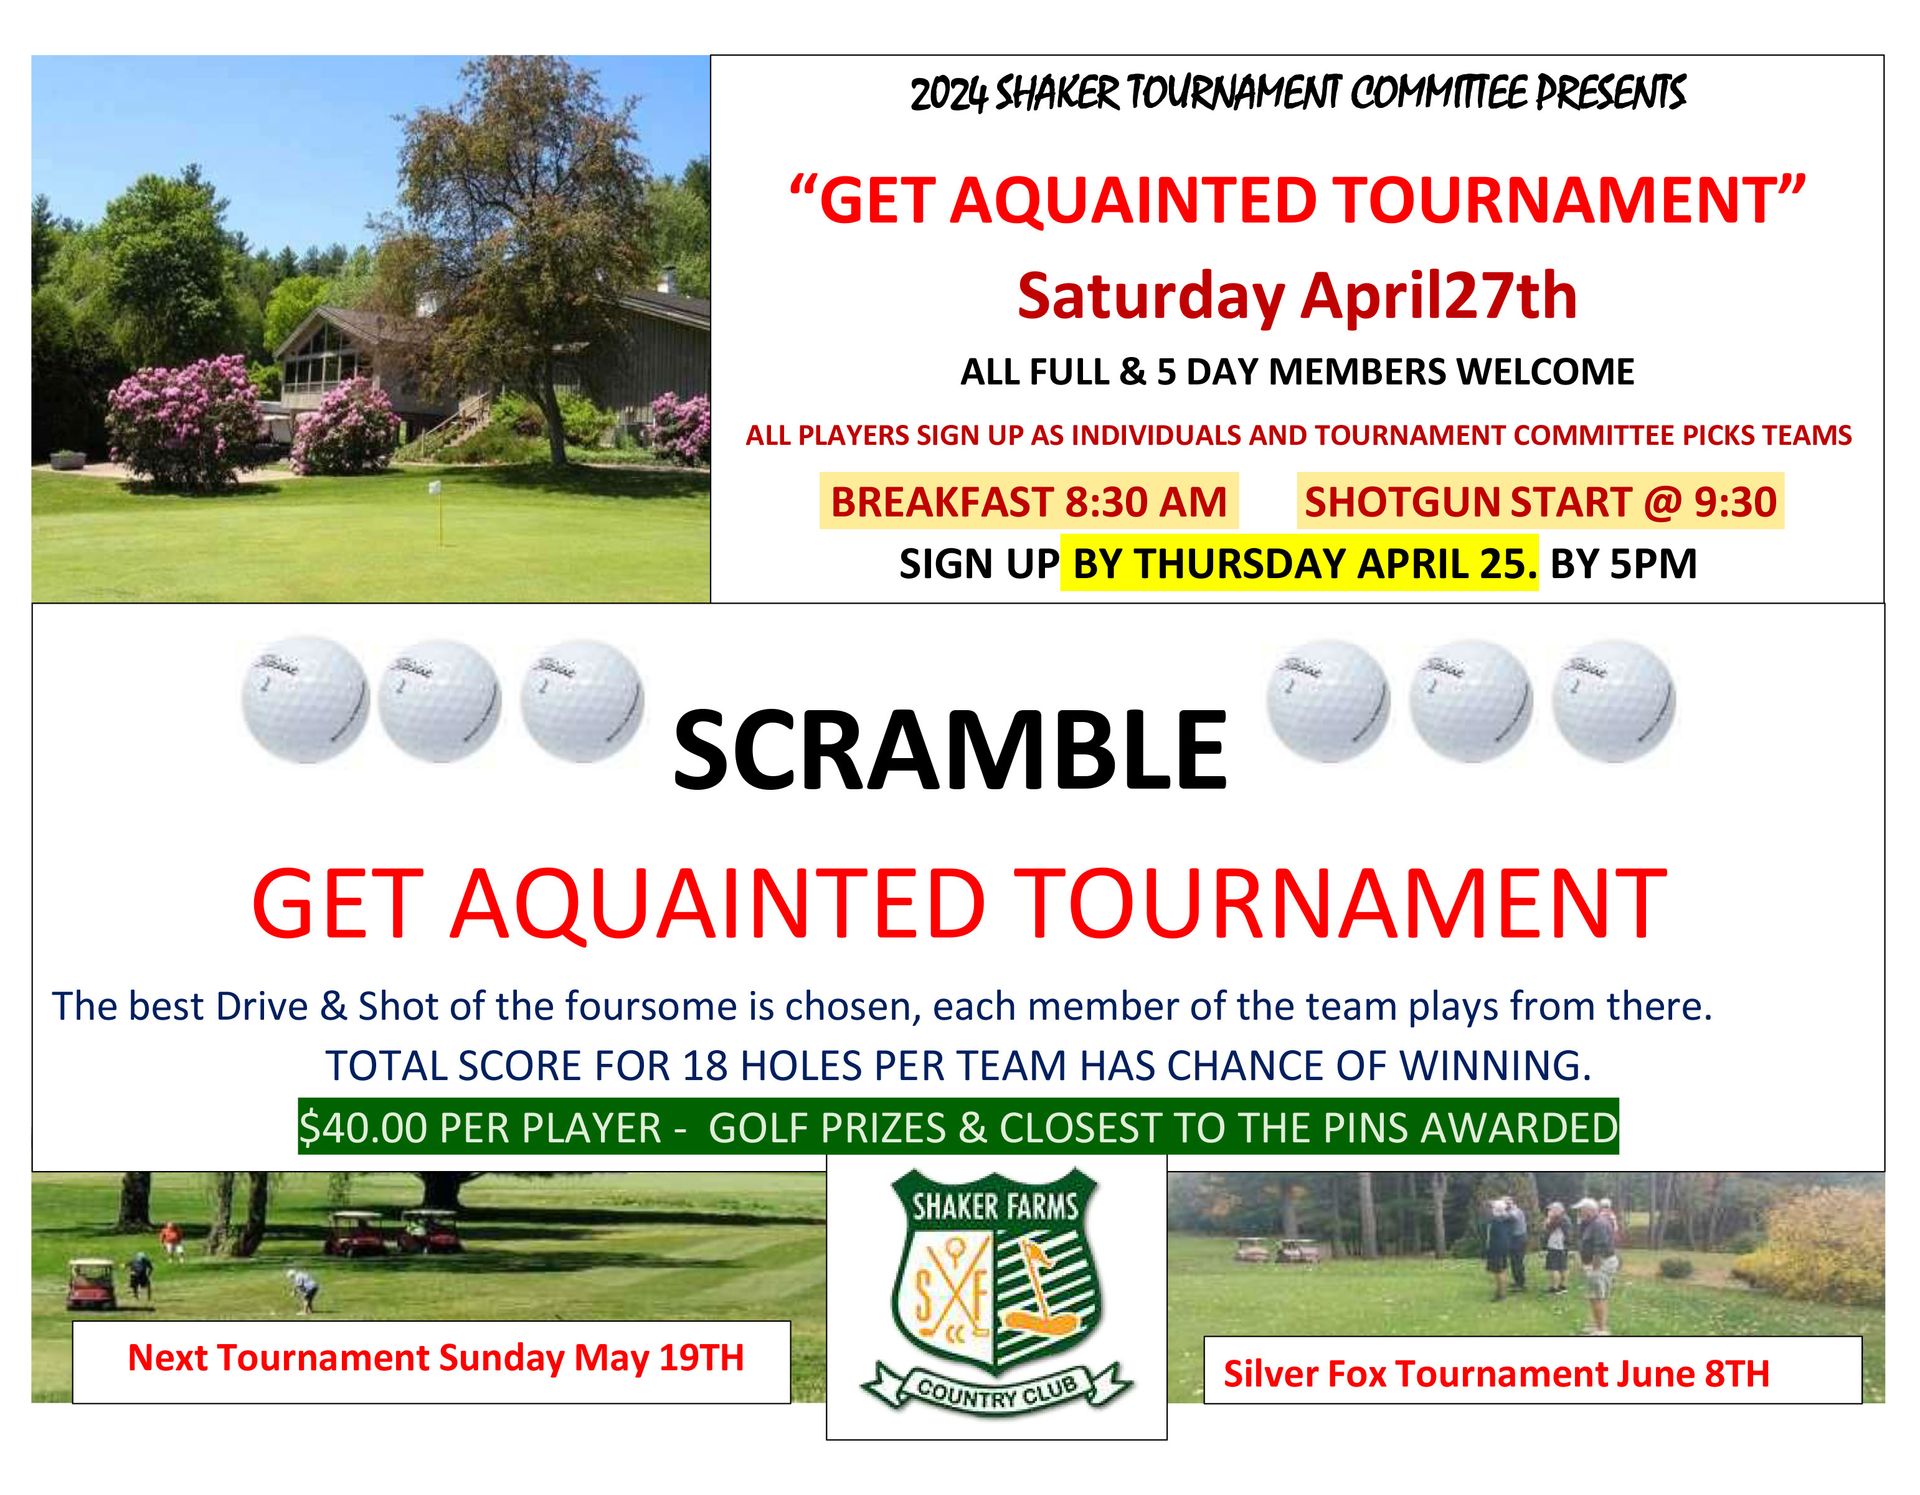 Get Acquainted Tournament  - April 27th